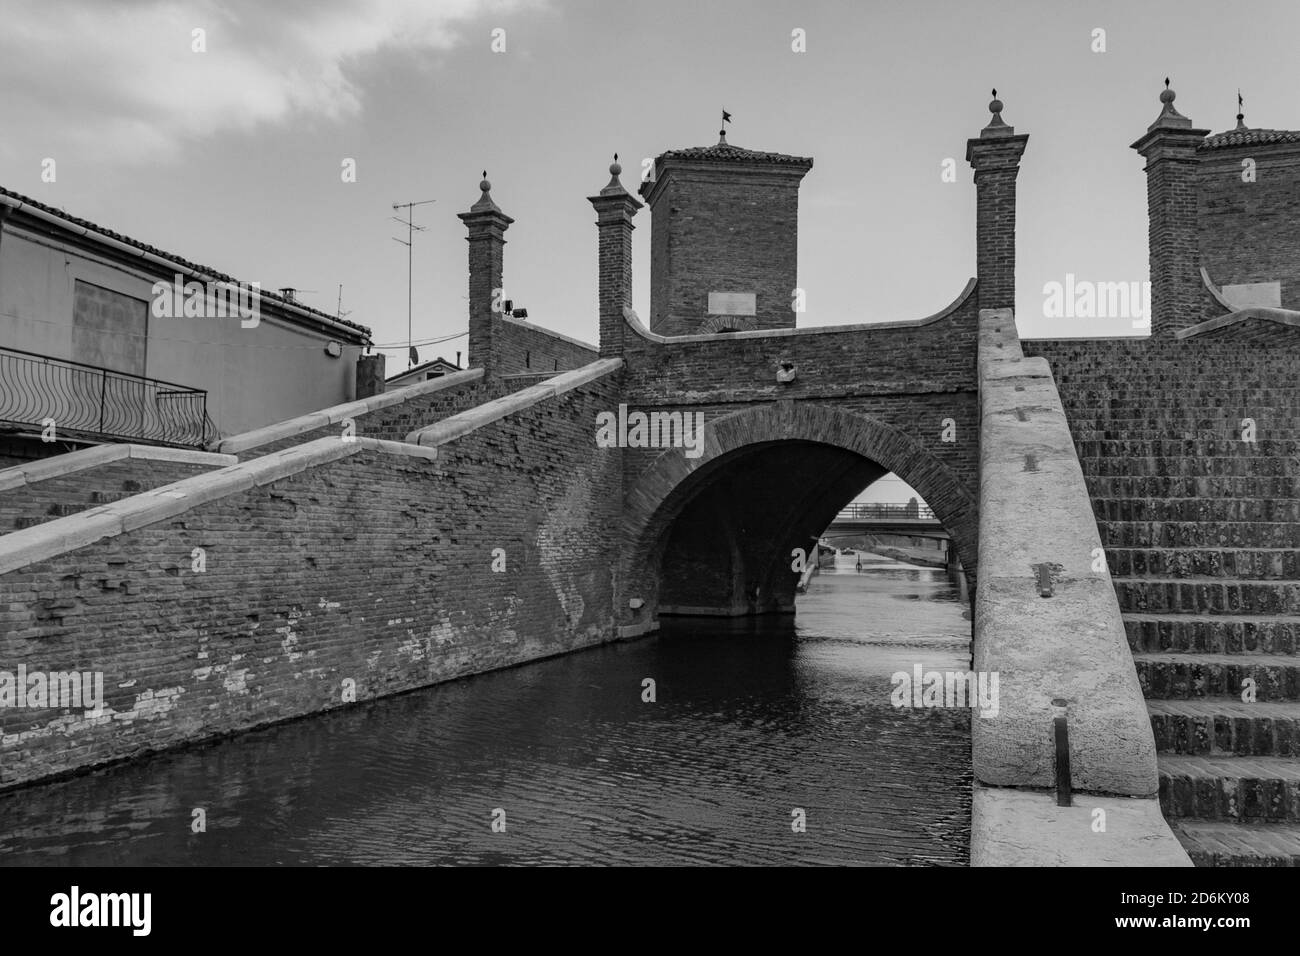 Vue sur un canal à Comacchio, Italie. Noir et blanc, espace de copie Banque D'Images